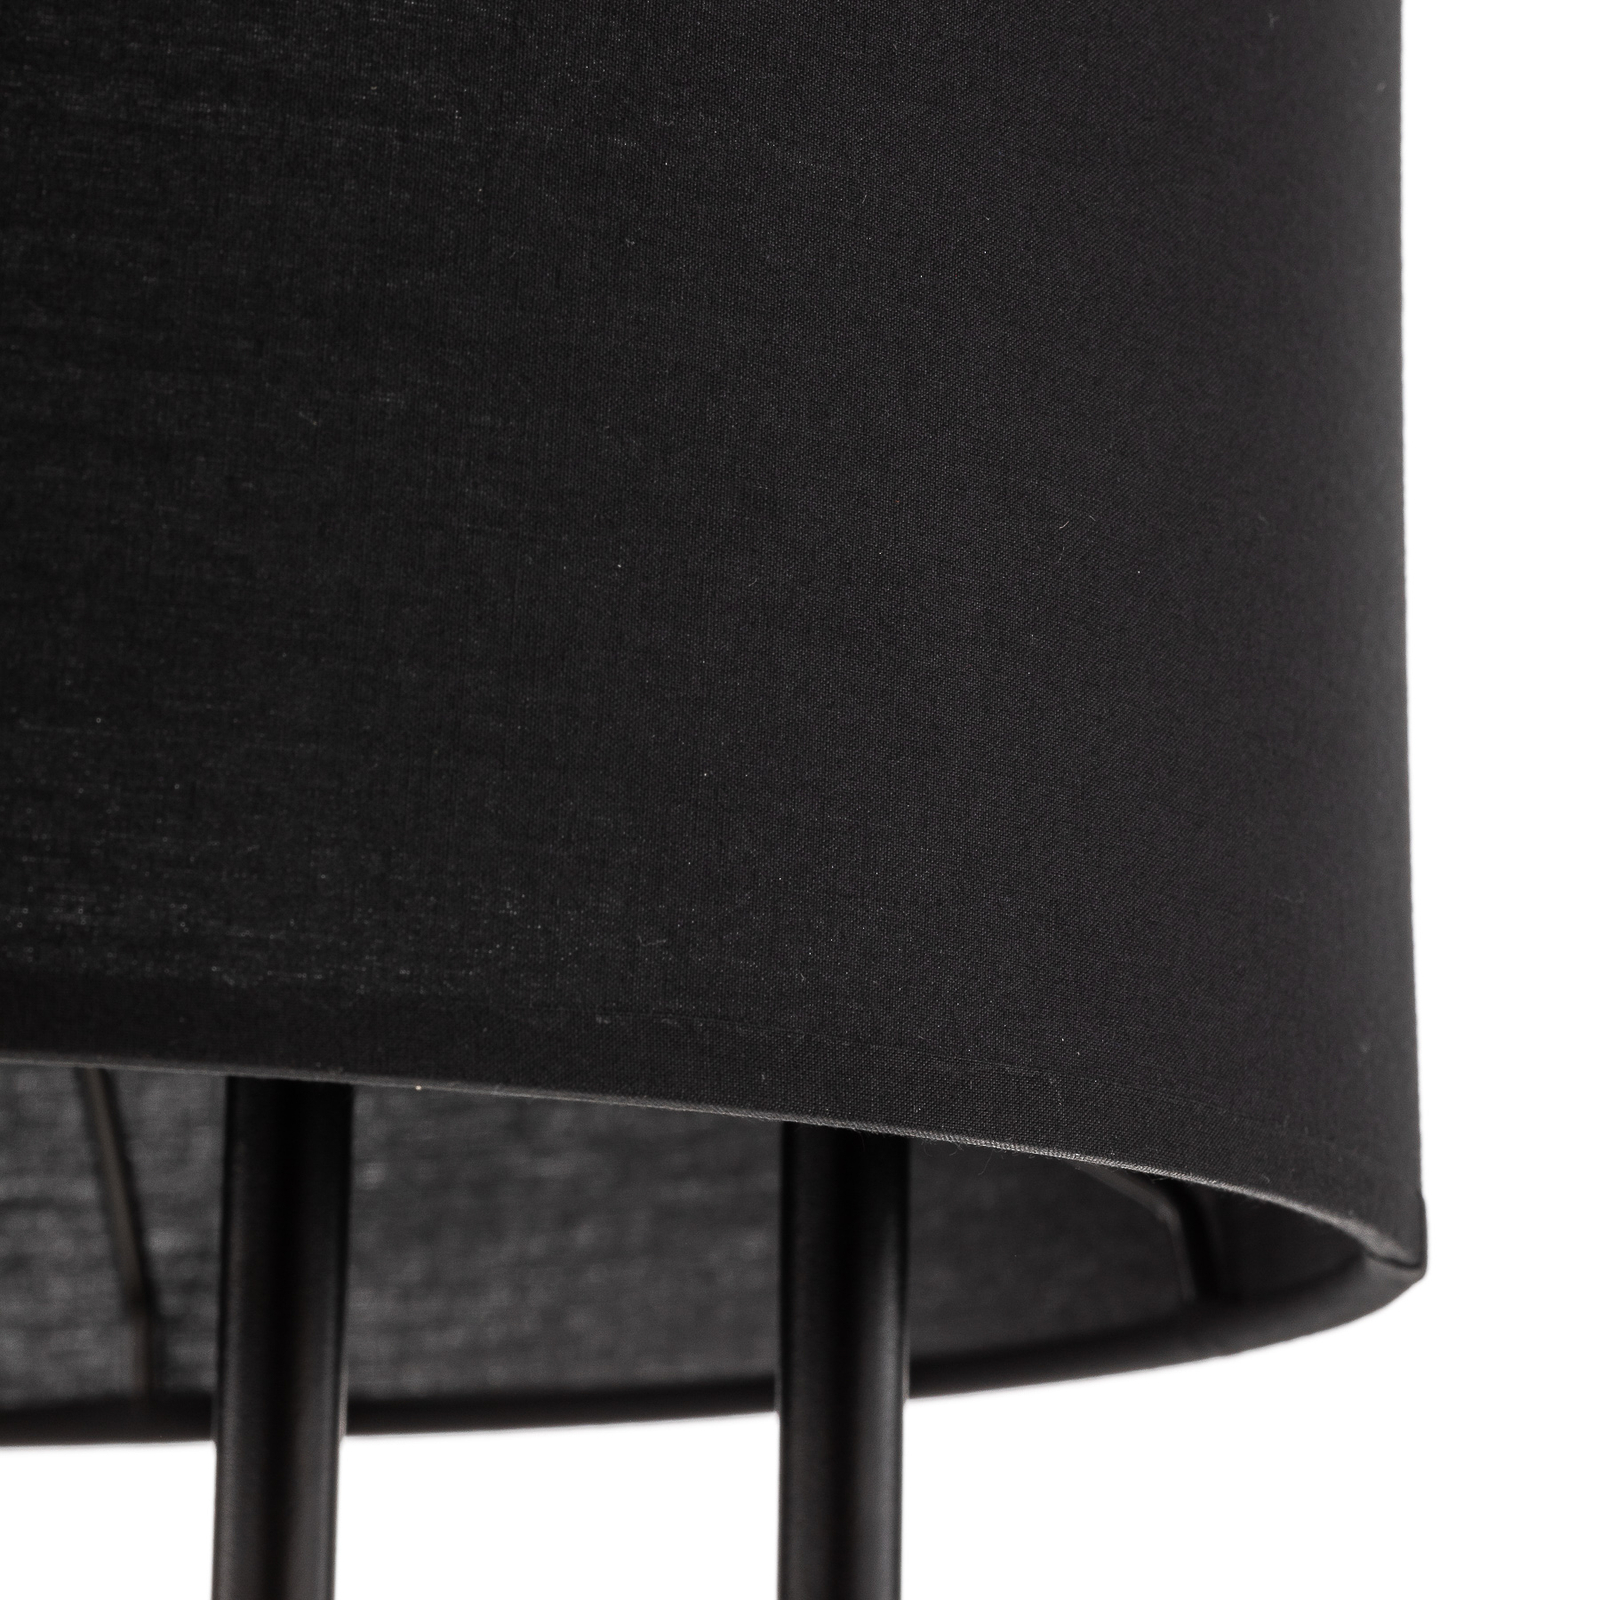 Clip textile floor lamp, black, height 150 cm